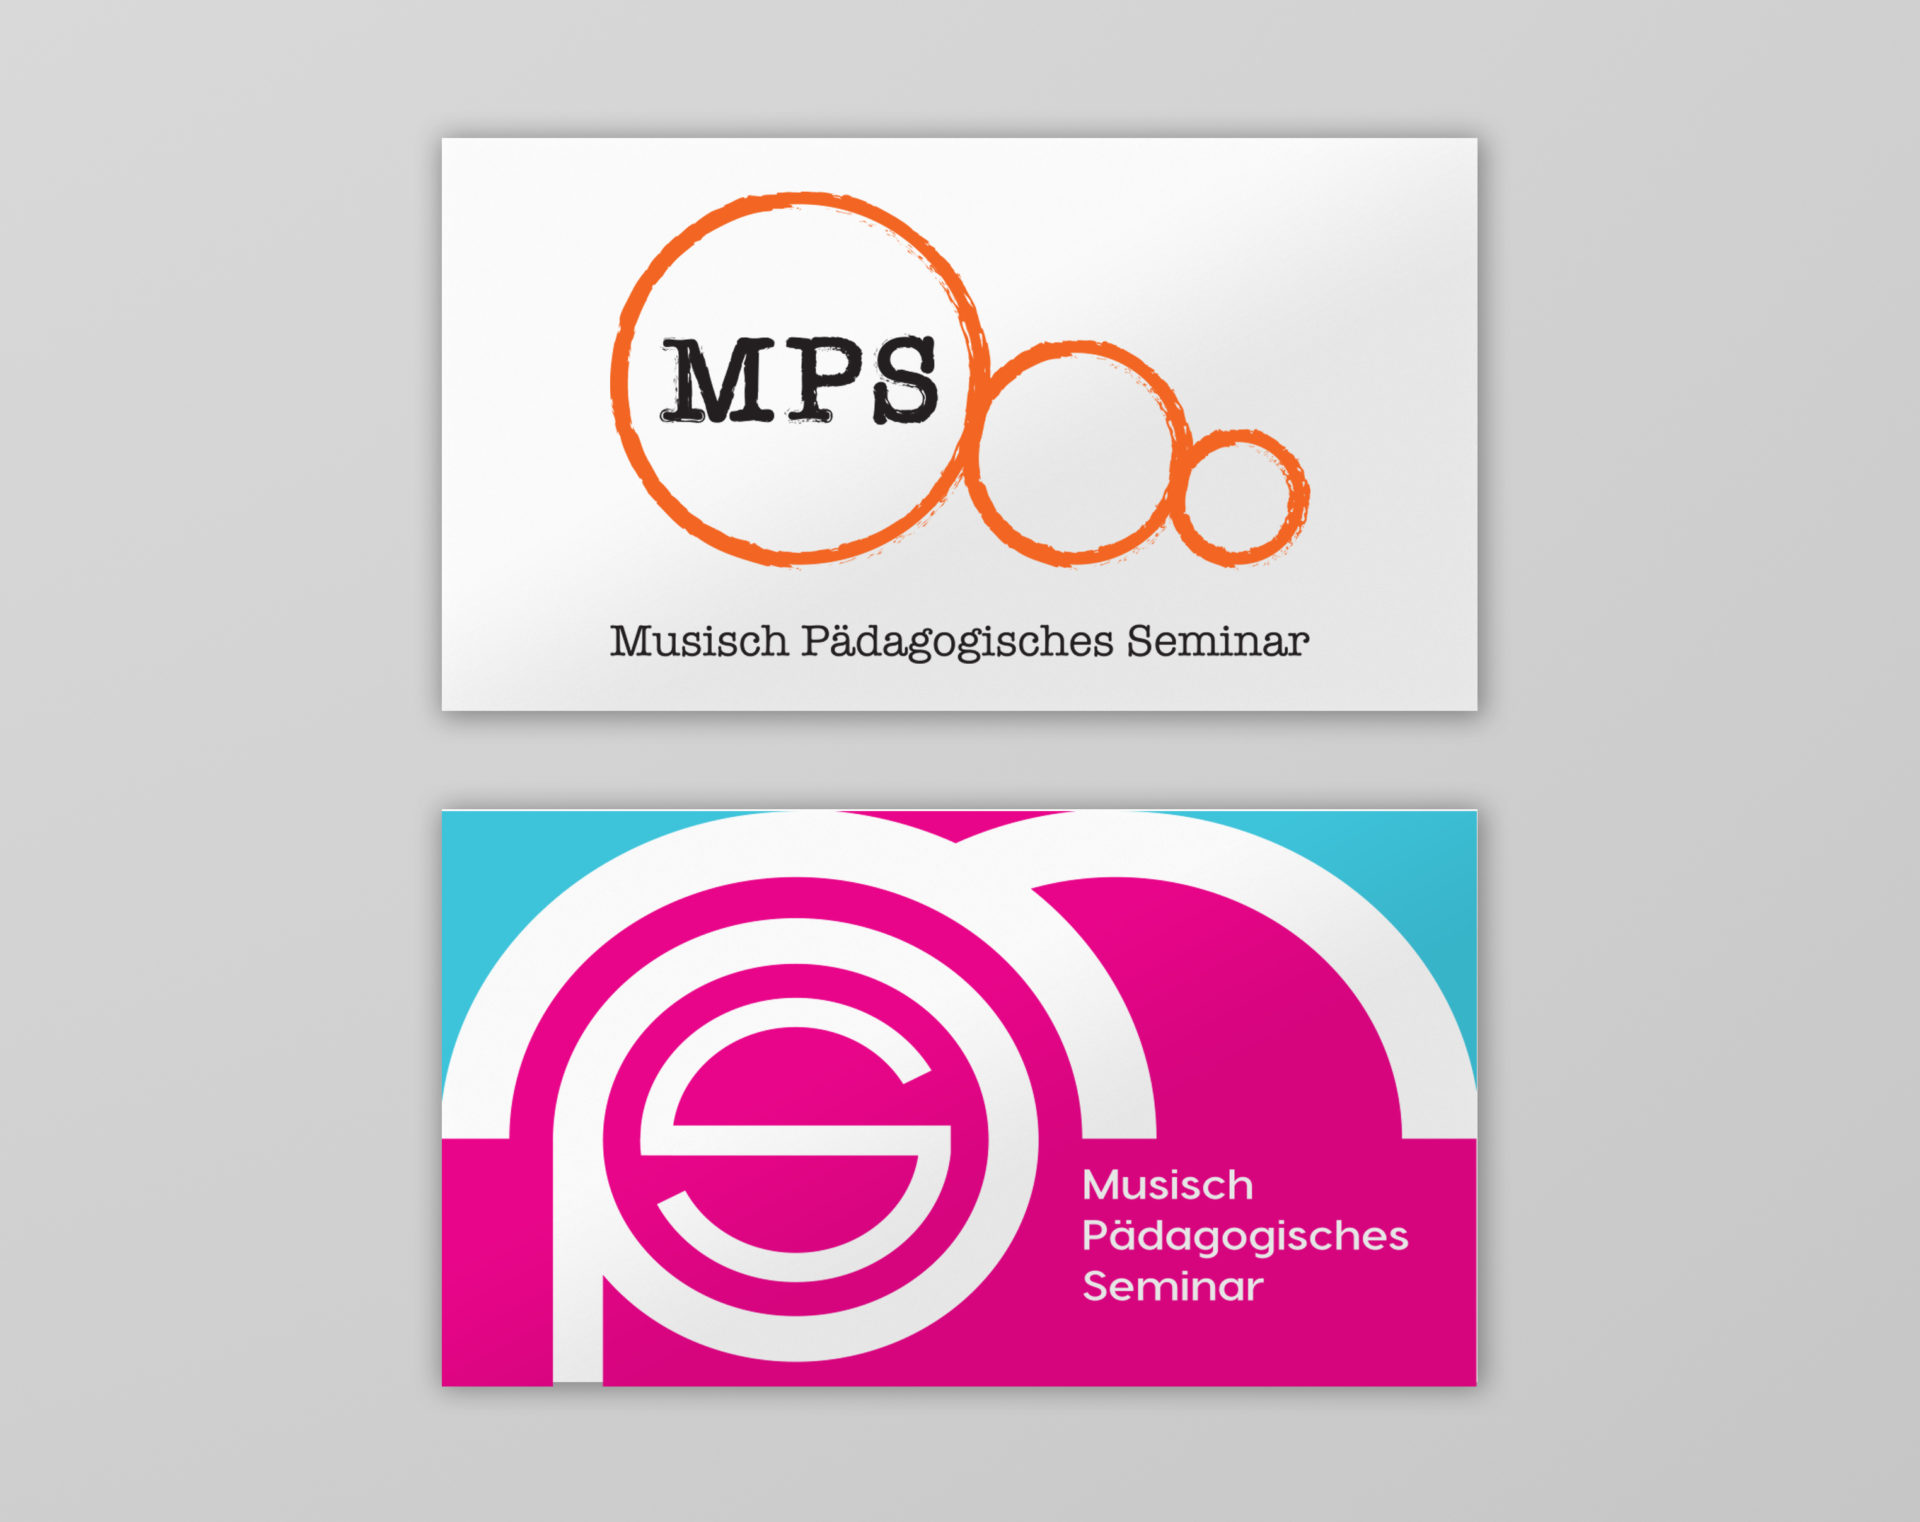 qda design logo mps